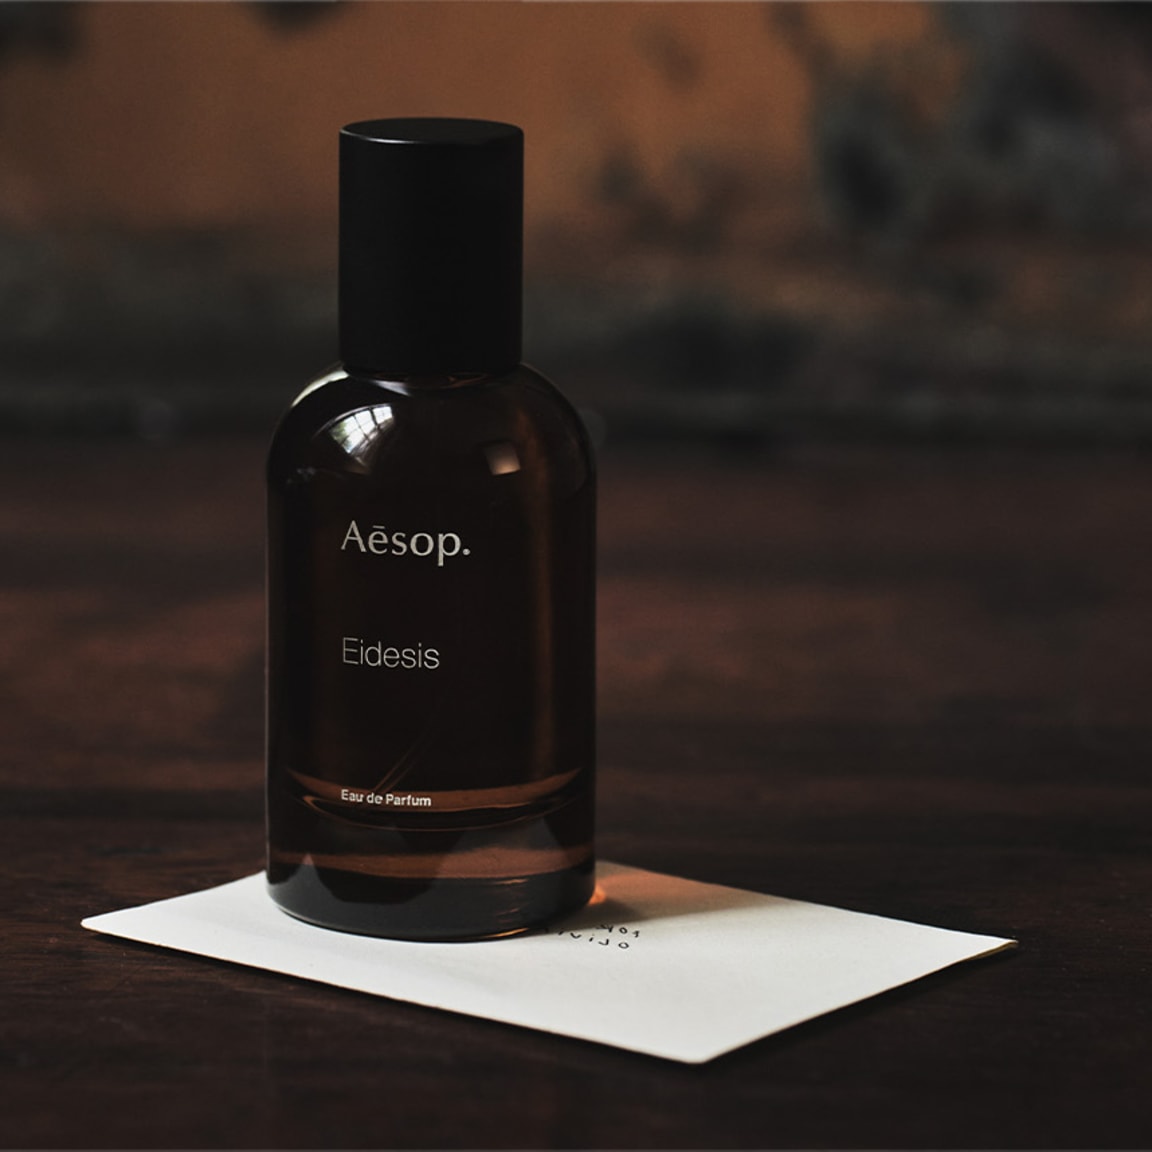 Woods. Warmth. Wonder: Discover Aesop's Eidesis Eau de Parfum